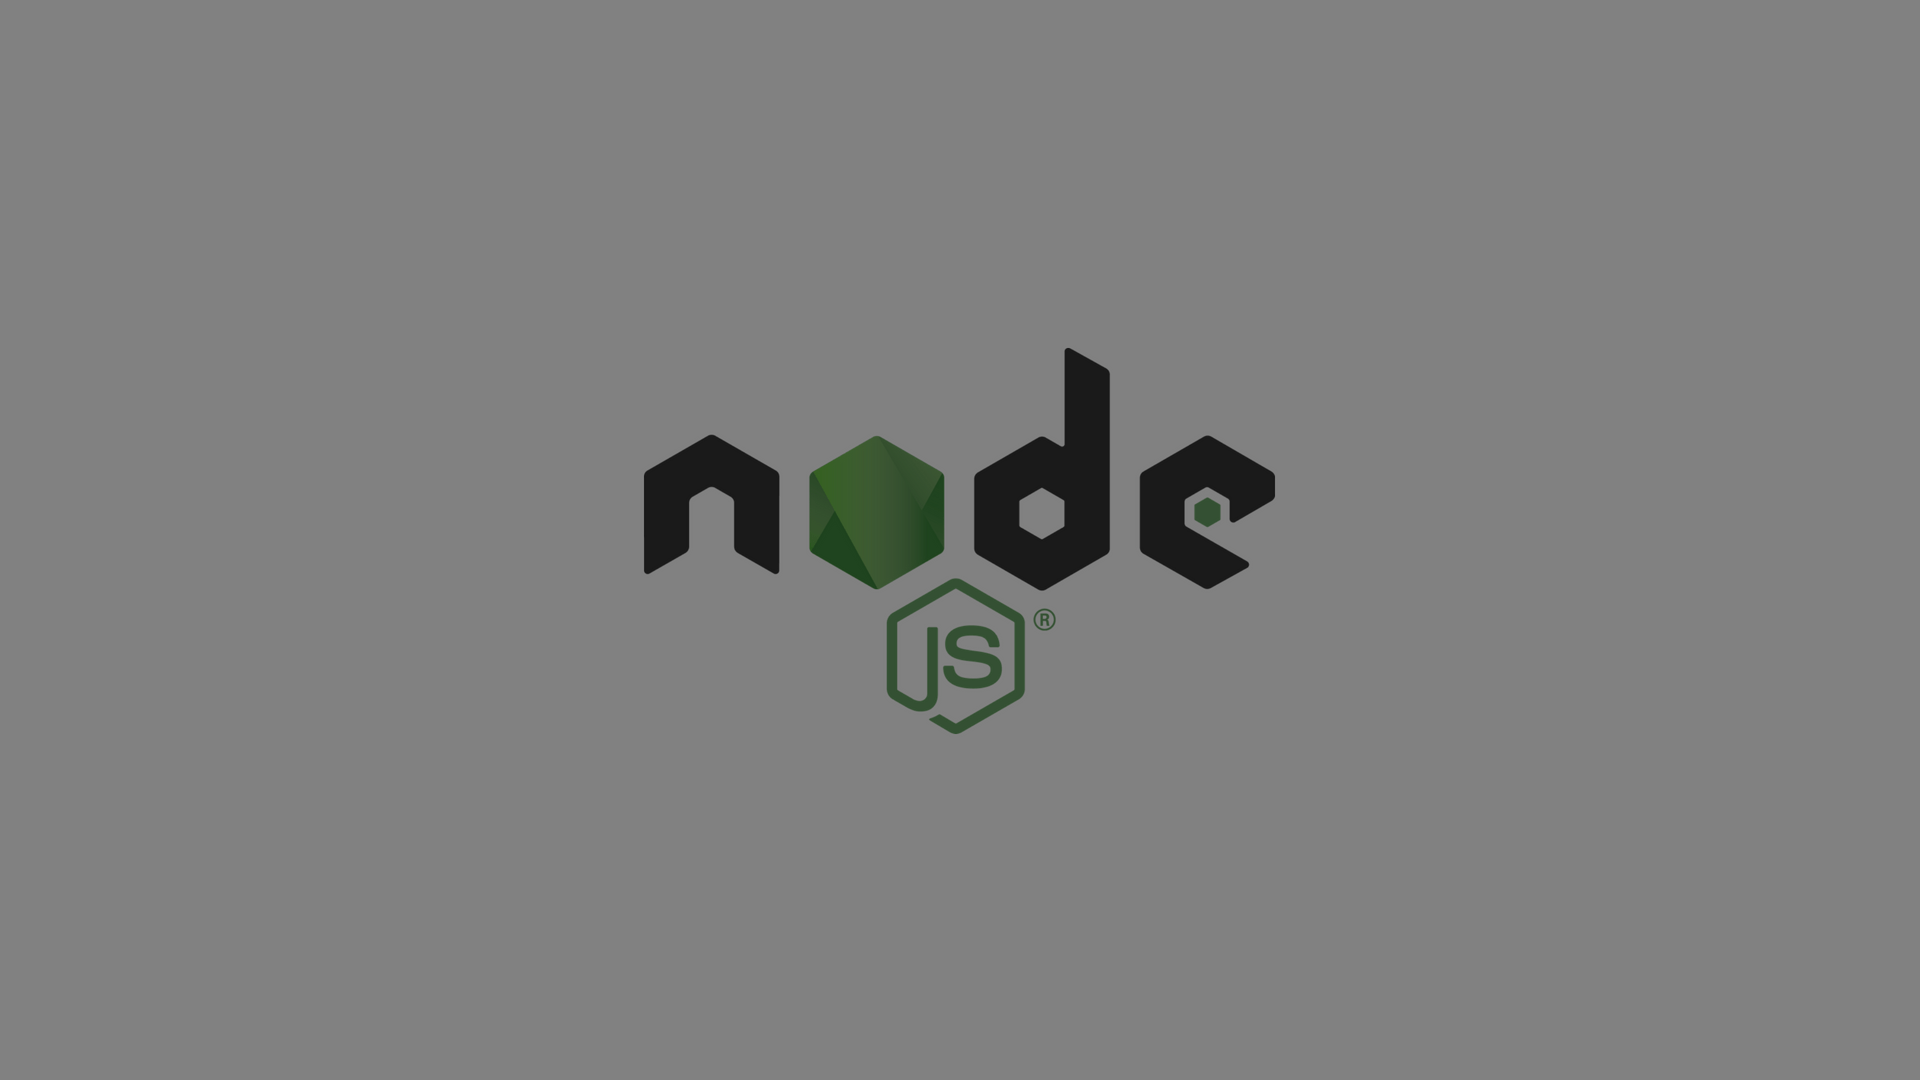 Https nodejs org. Node js js. Обои node js. Nodejs на рабочий стол. Js обои на рабочий стол.